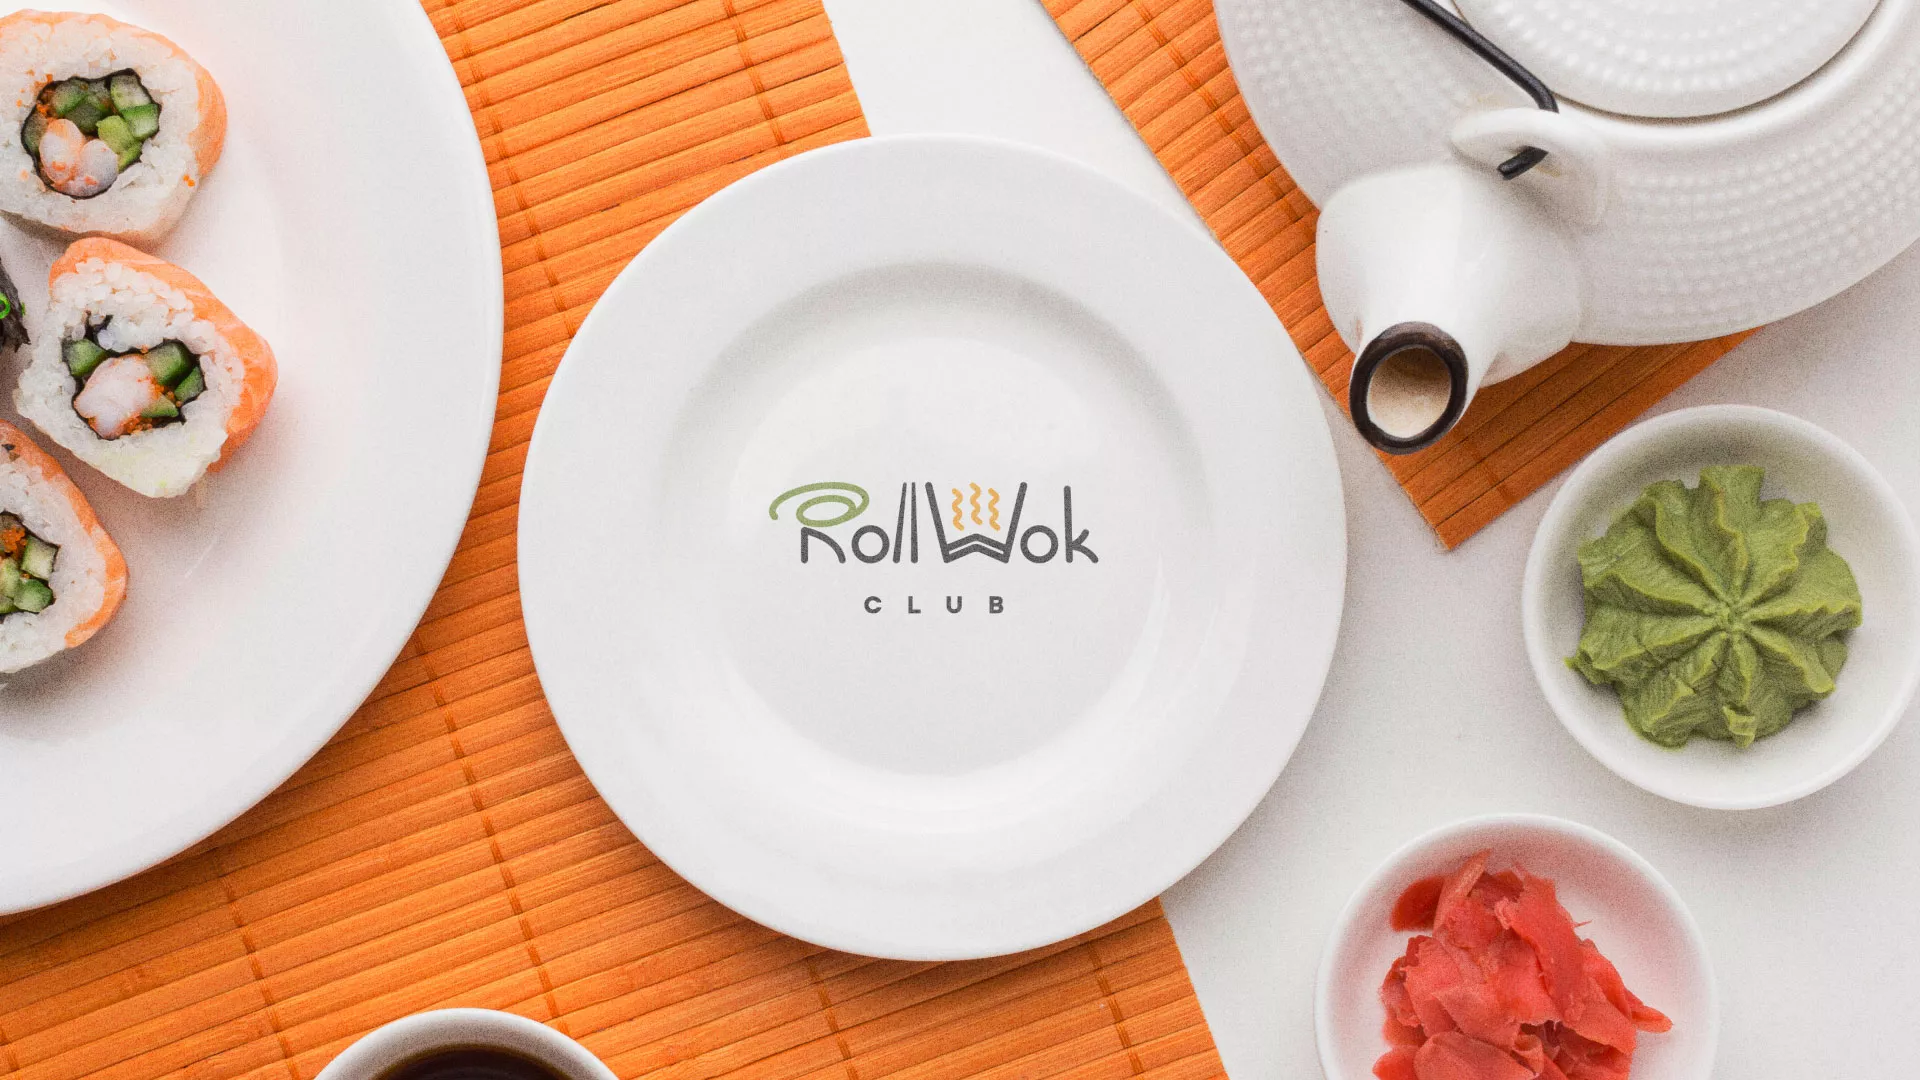 Разработка логотипа и фирменного стиля суши-бара «Roll Wok Club» в Краснослободске